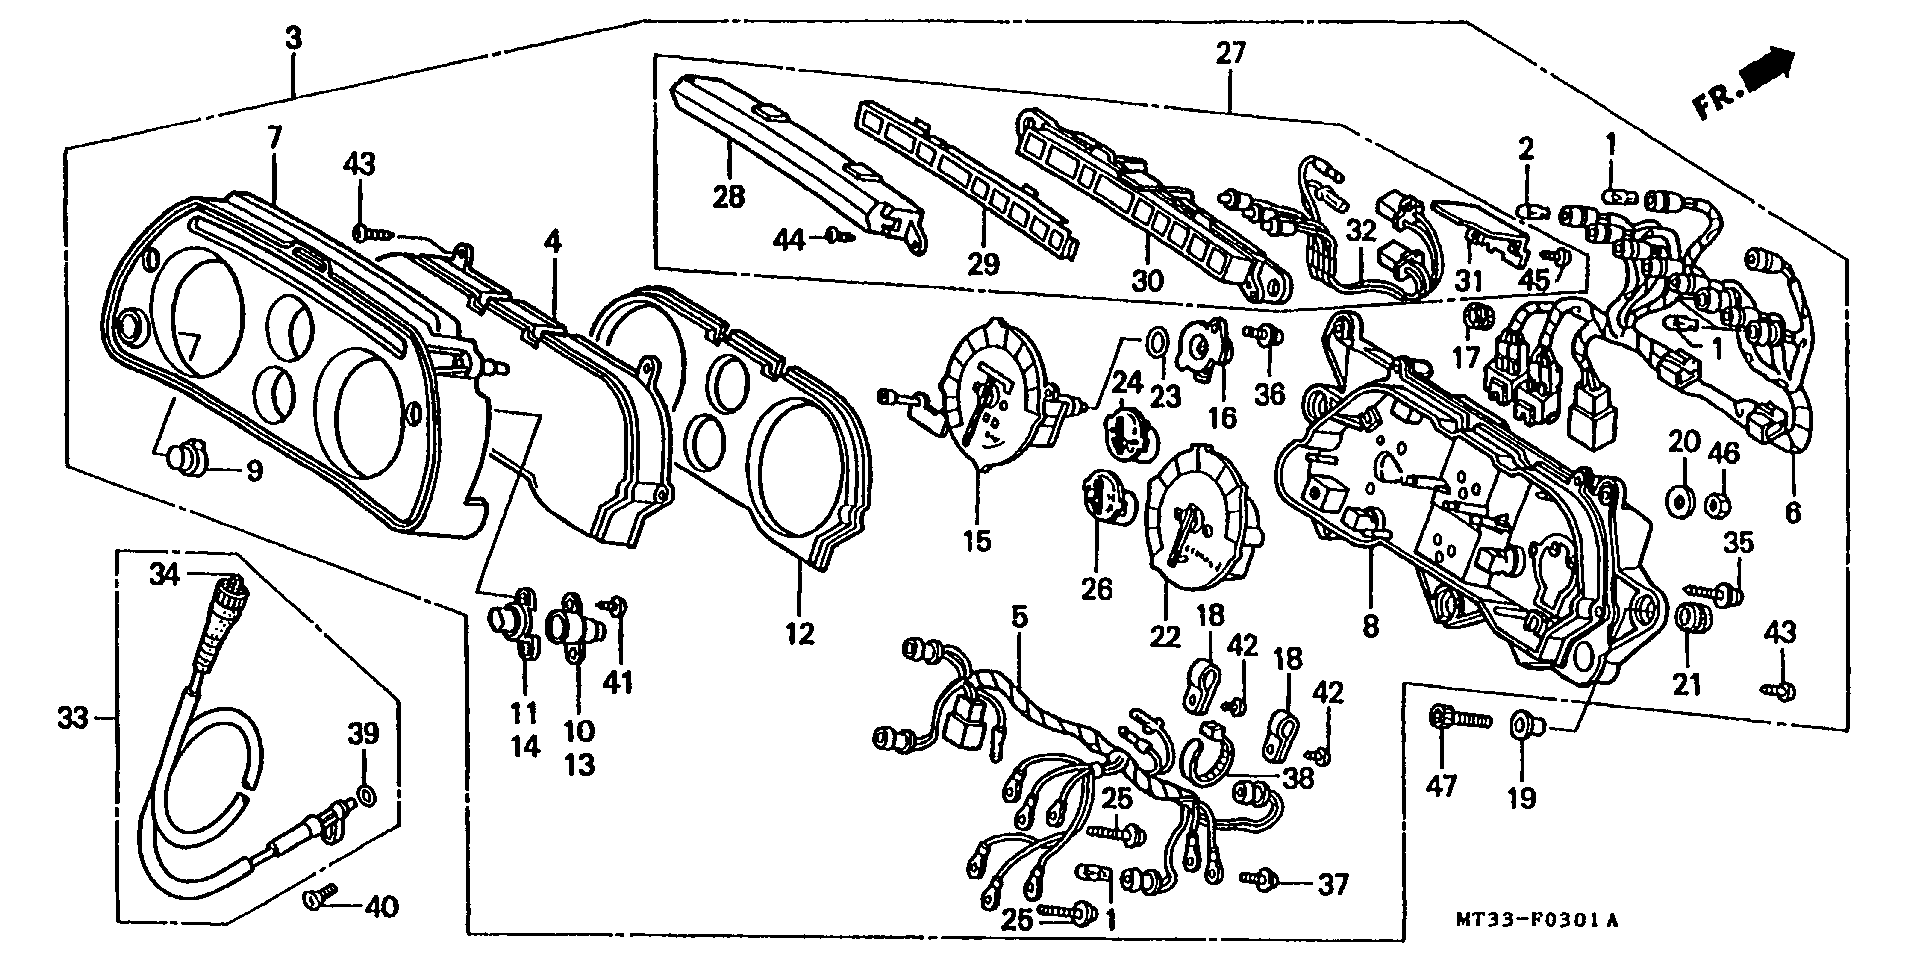 Parts fiche Instruments ST1100